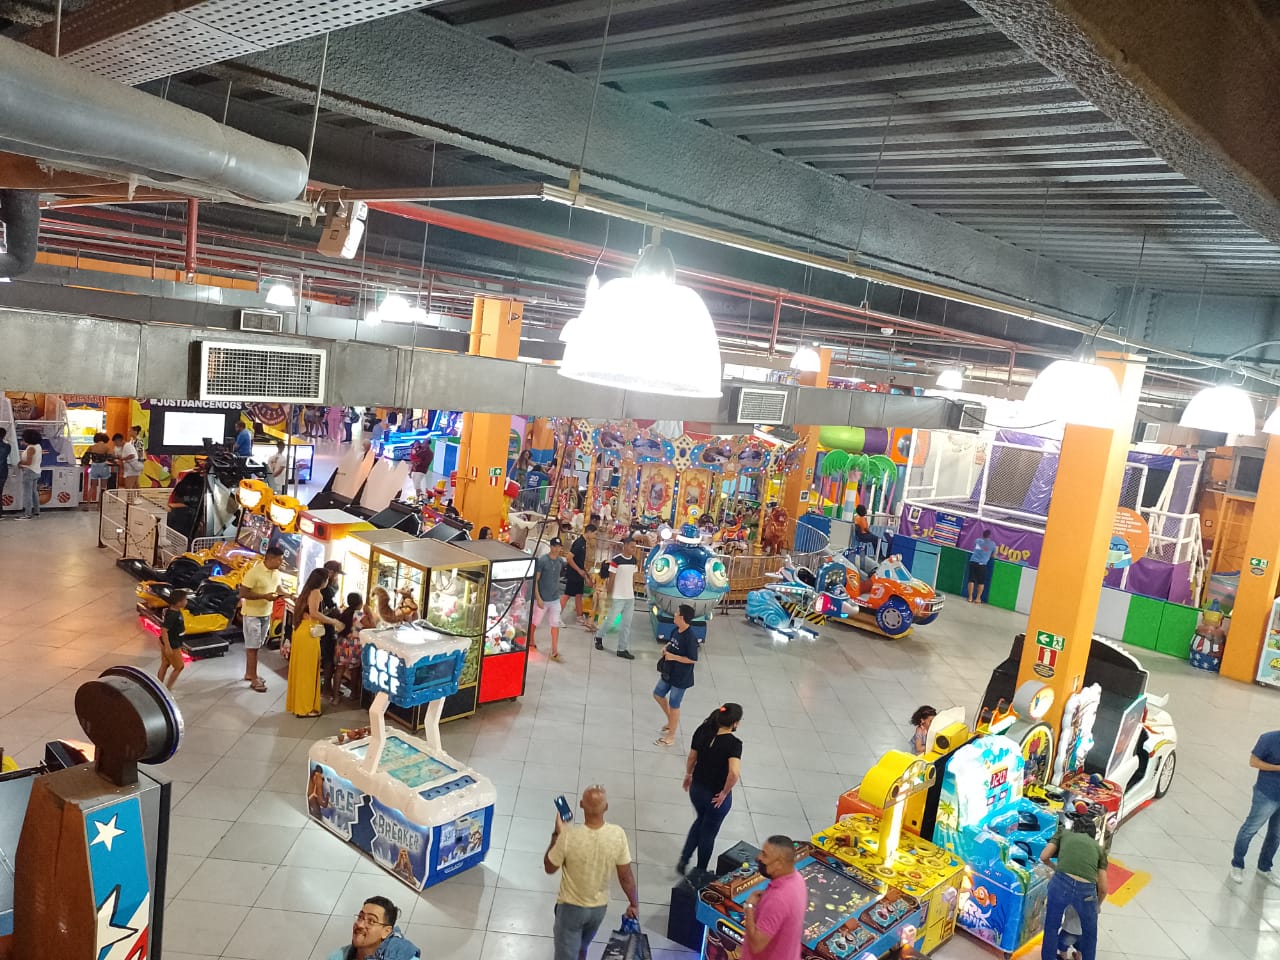 Estacionamento gratuito para sócios do Bahia em dia de jogo em casa -  Shopping Bela Vista